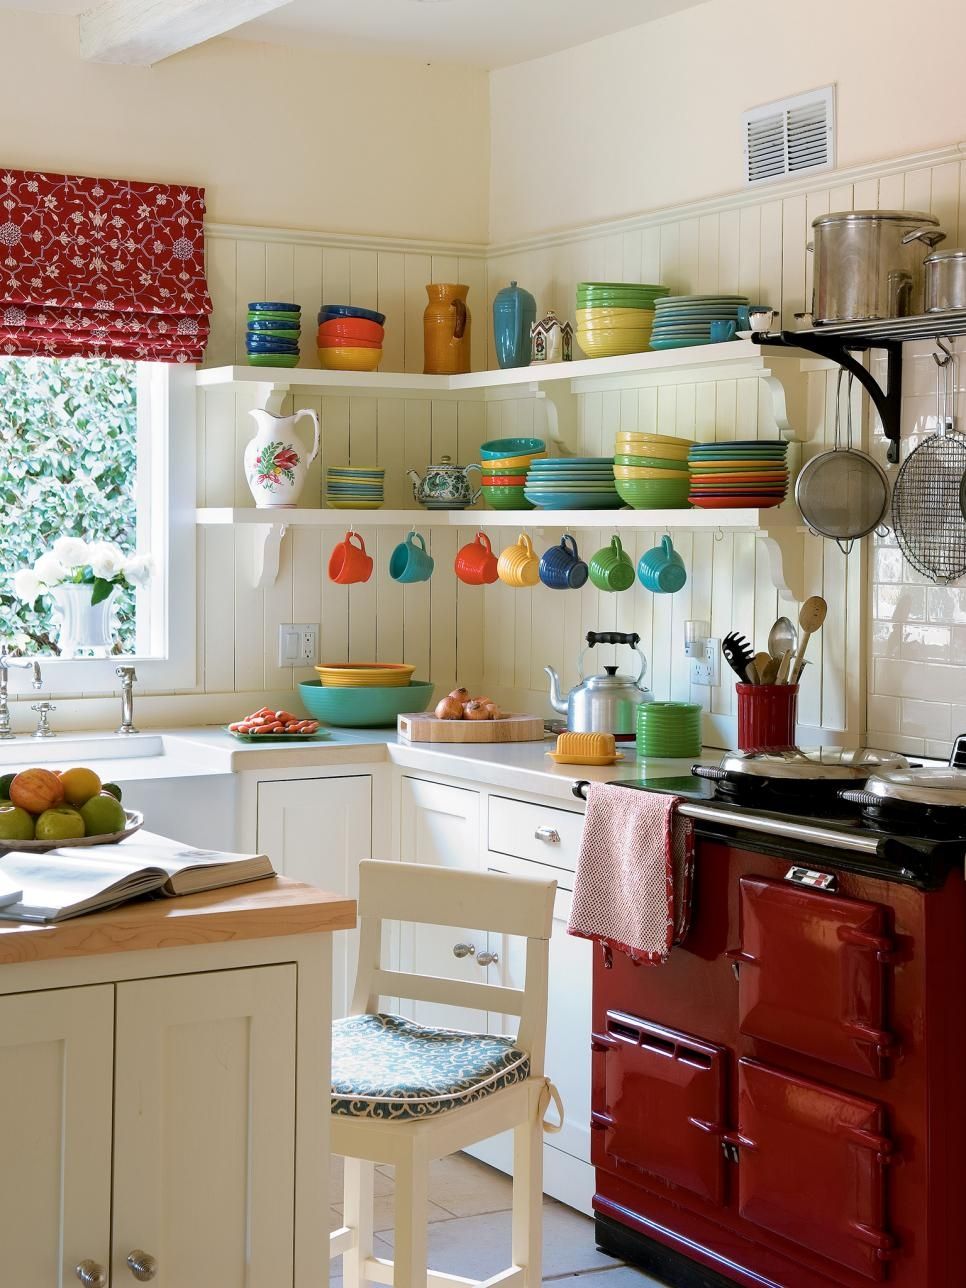 Interiorul bucătăriei albe cu o combinație armonioasă de culori